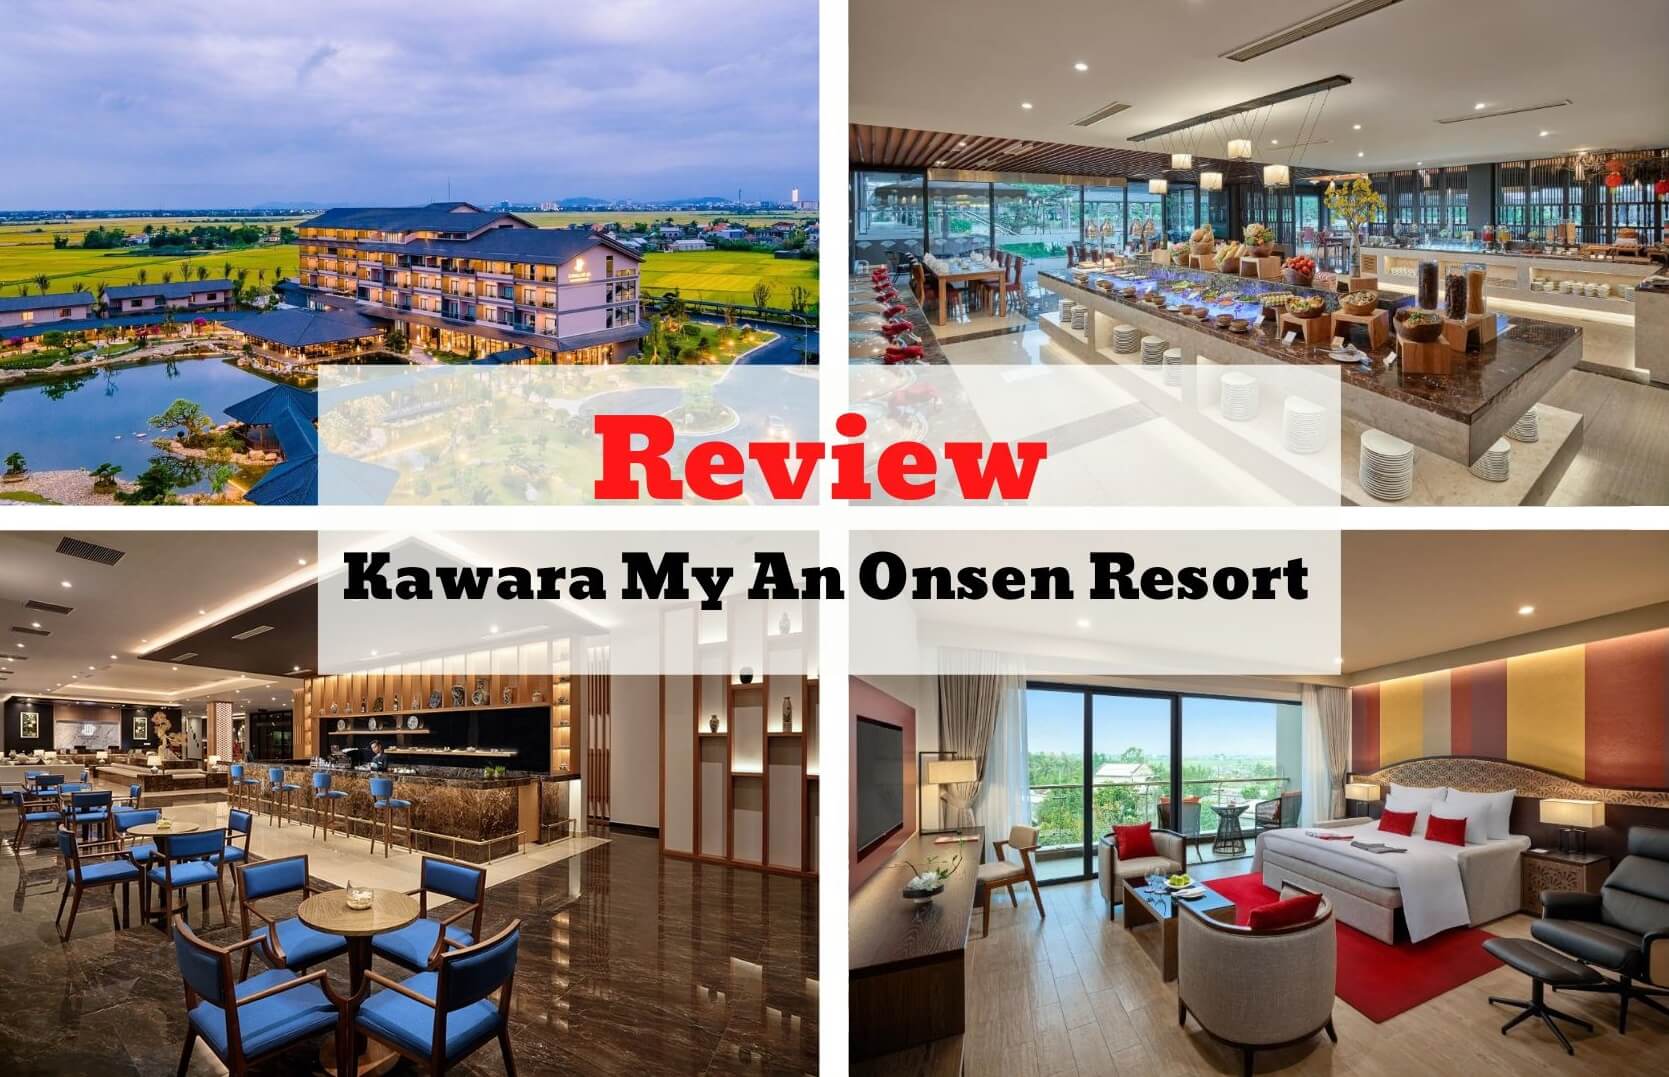 Review Kawara My An Onsen Resort - Tinh hoa kiến trúc Nhật Bản trên mảnh đất cố đô